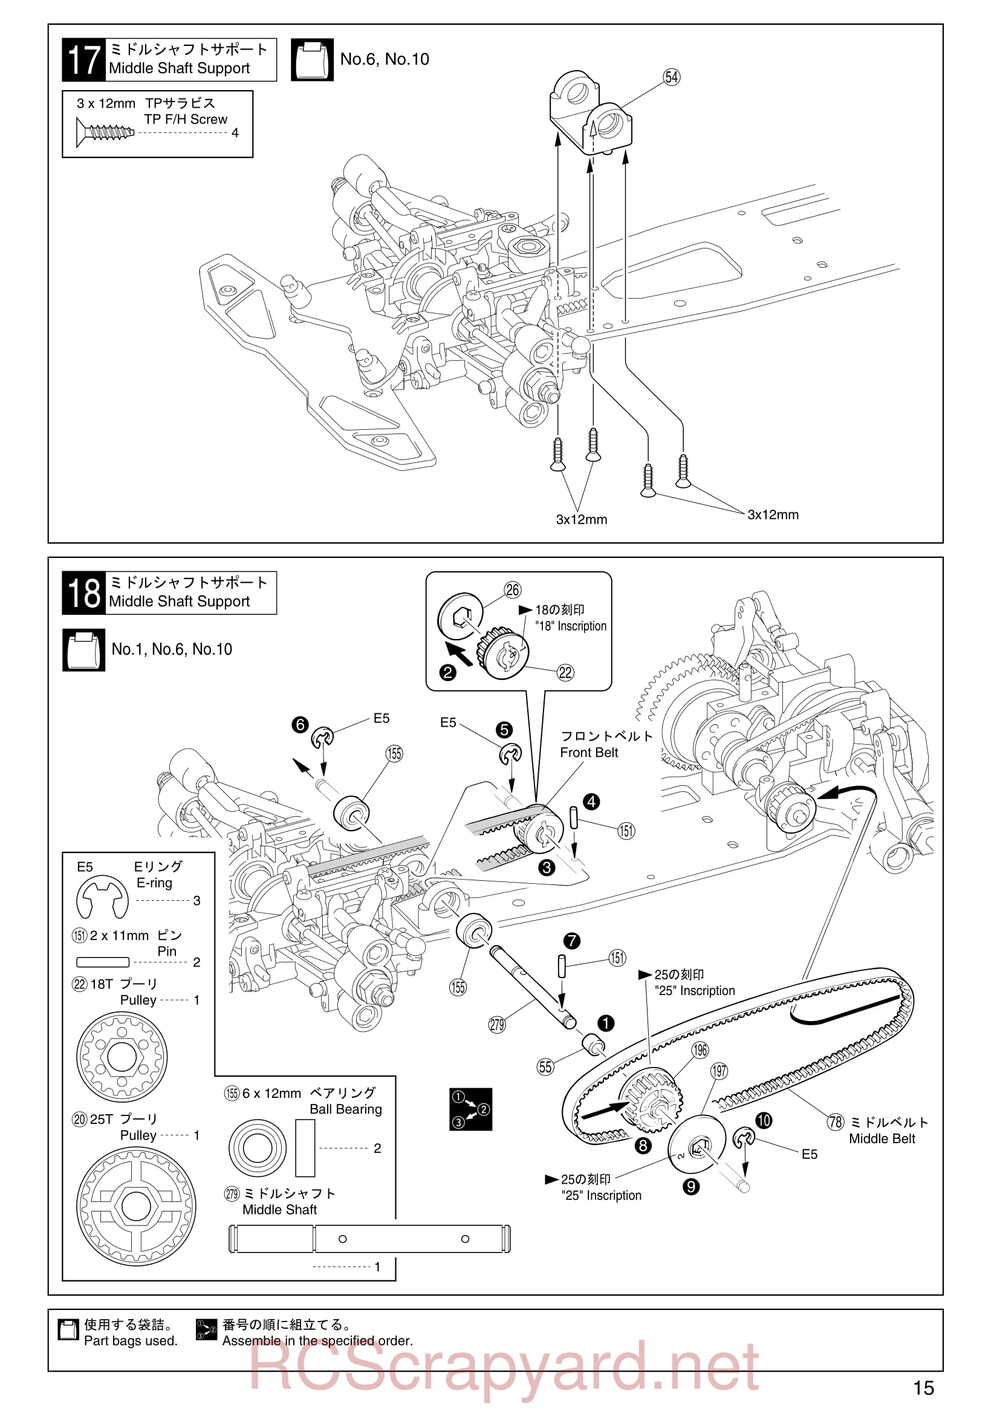 Kyosho - 31255 - V-One RR Evolution - Manual - Page 15